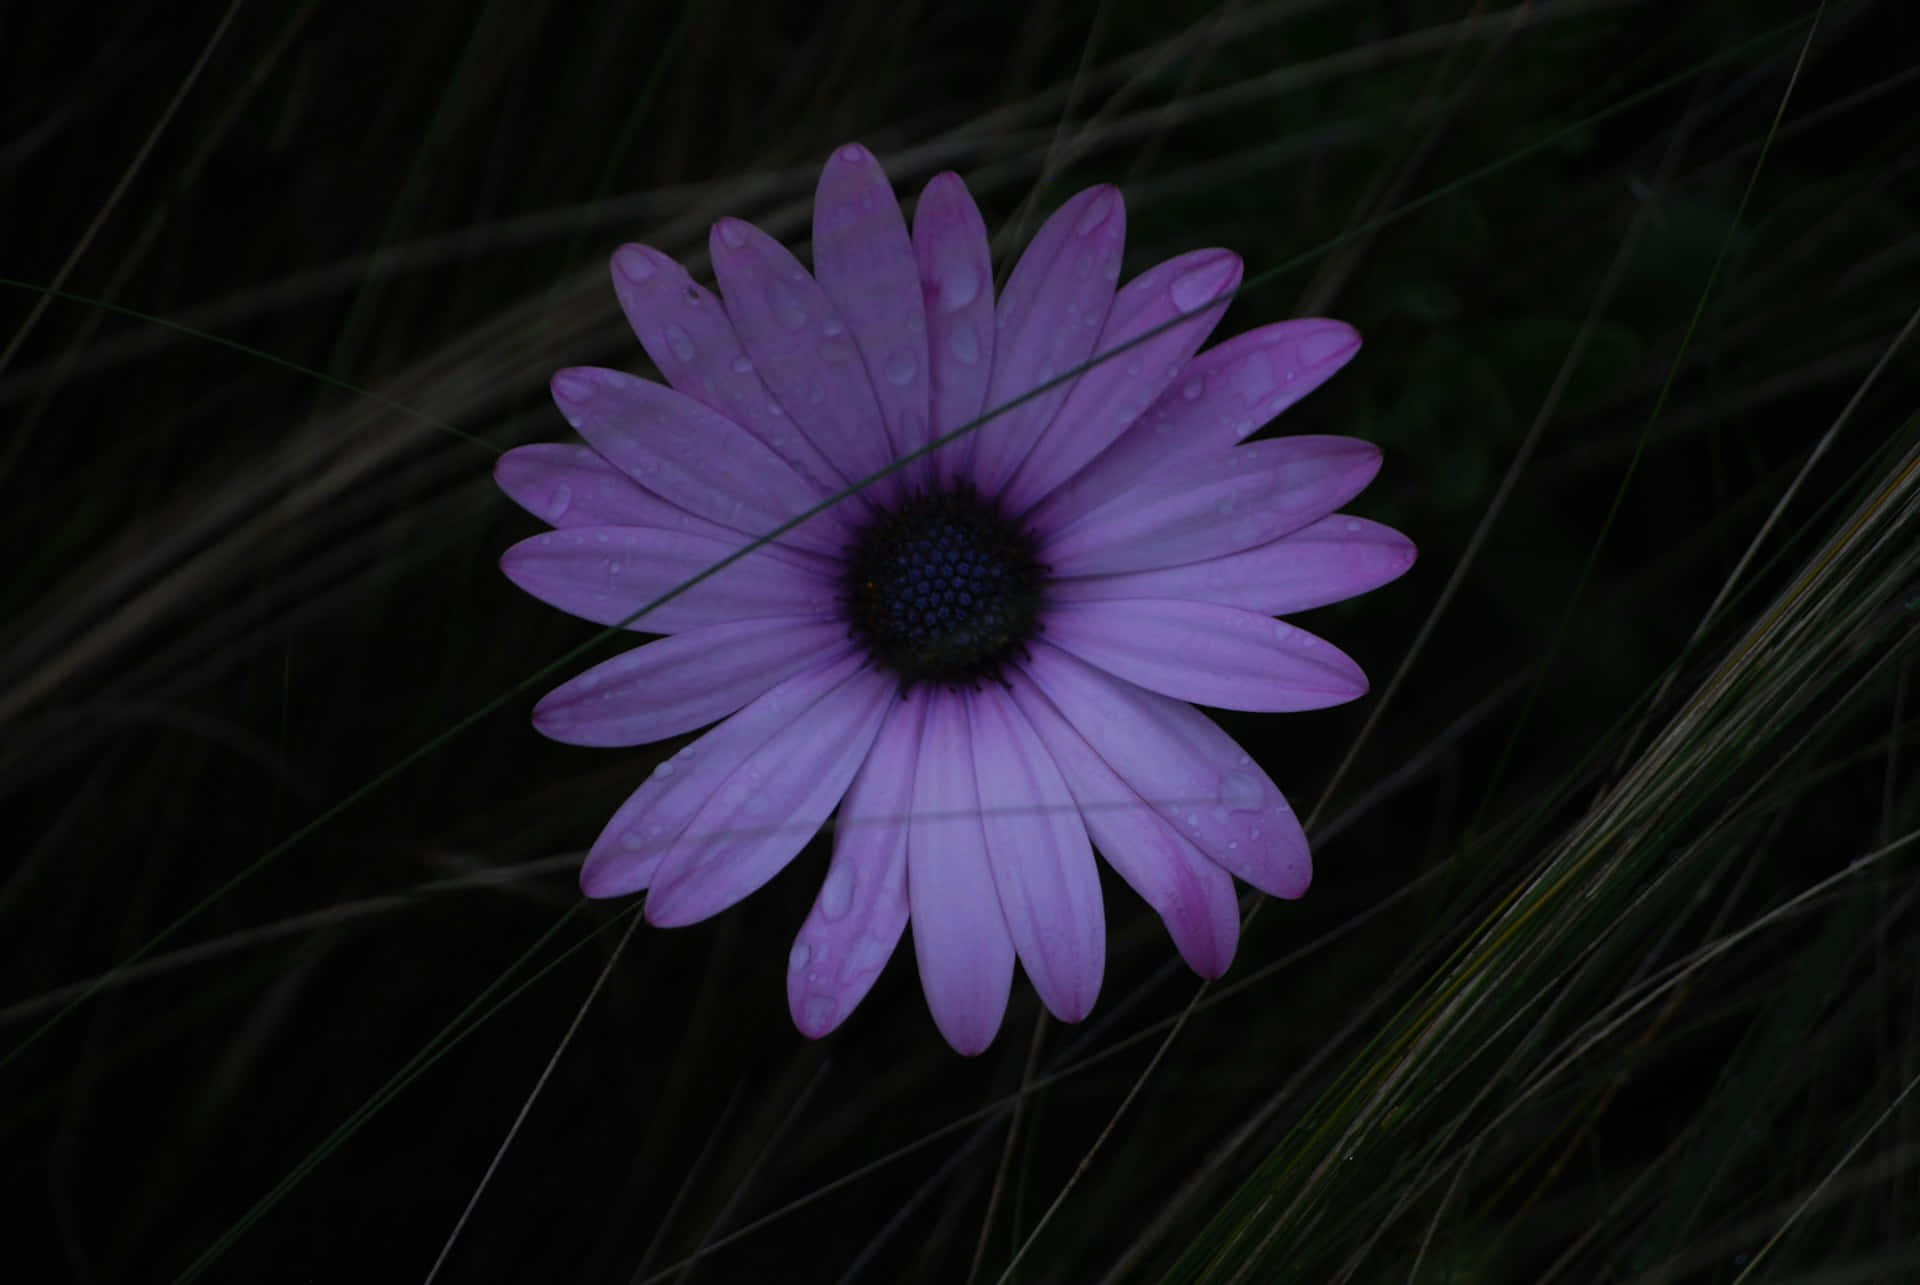 Dewy Purple Daisy Dark Background.jpg Wallpaper